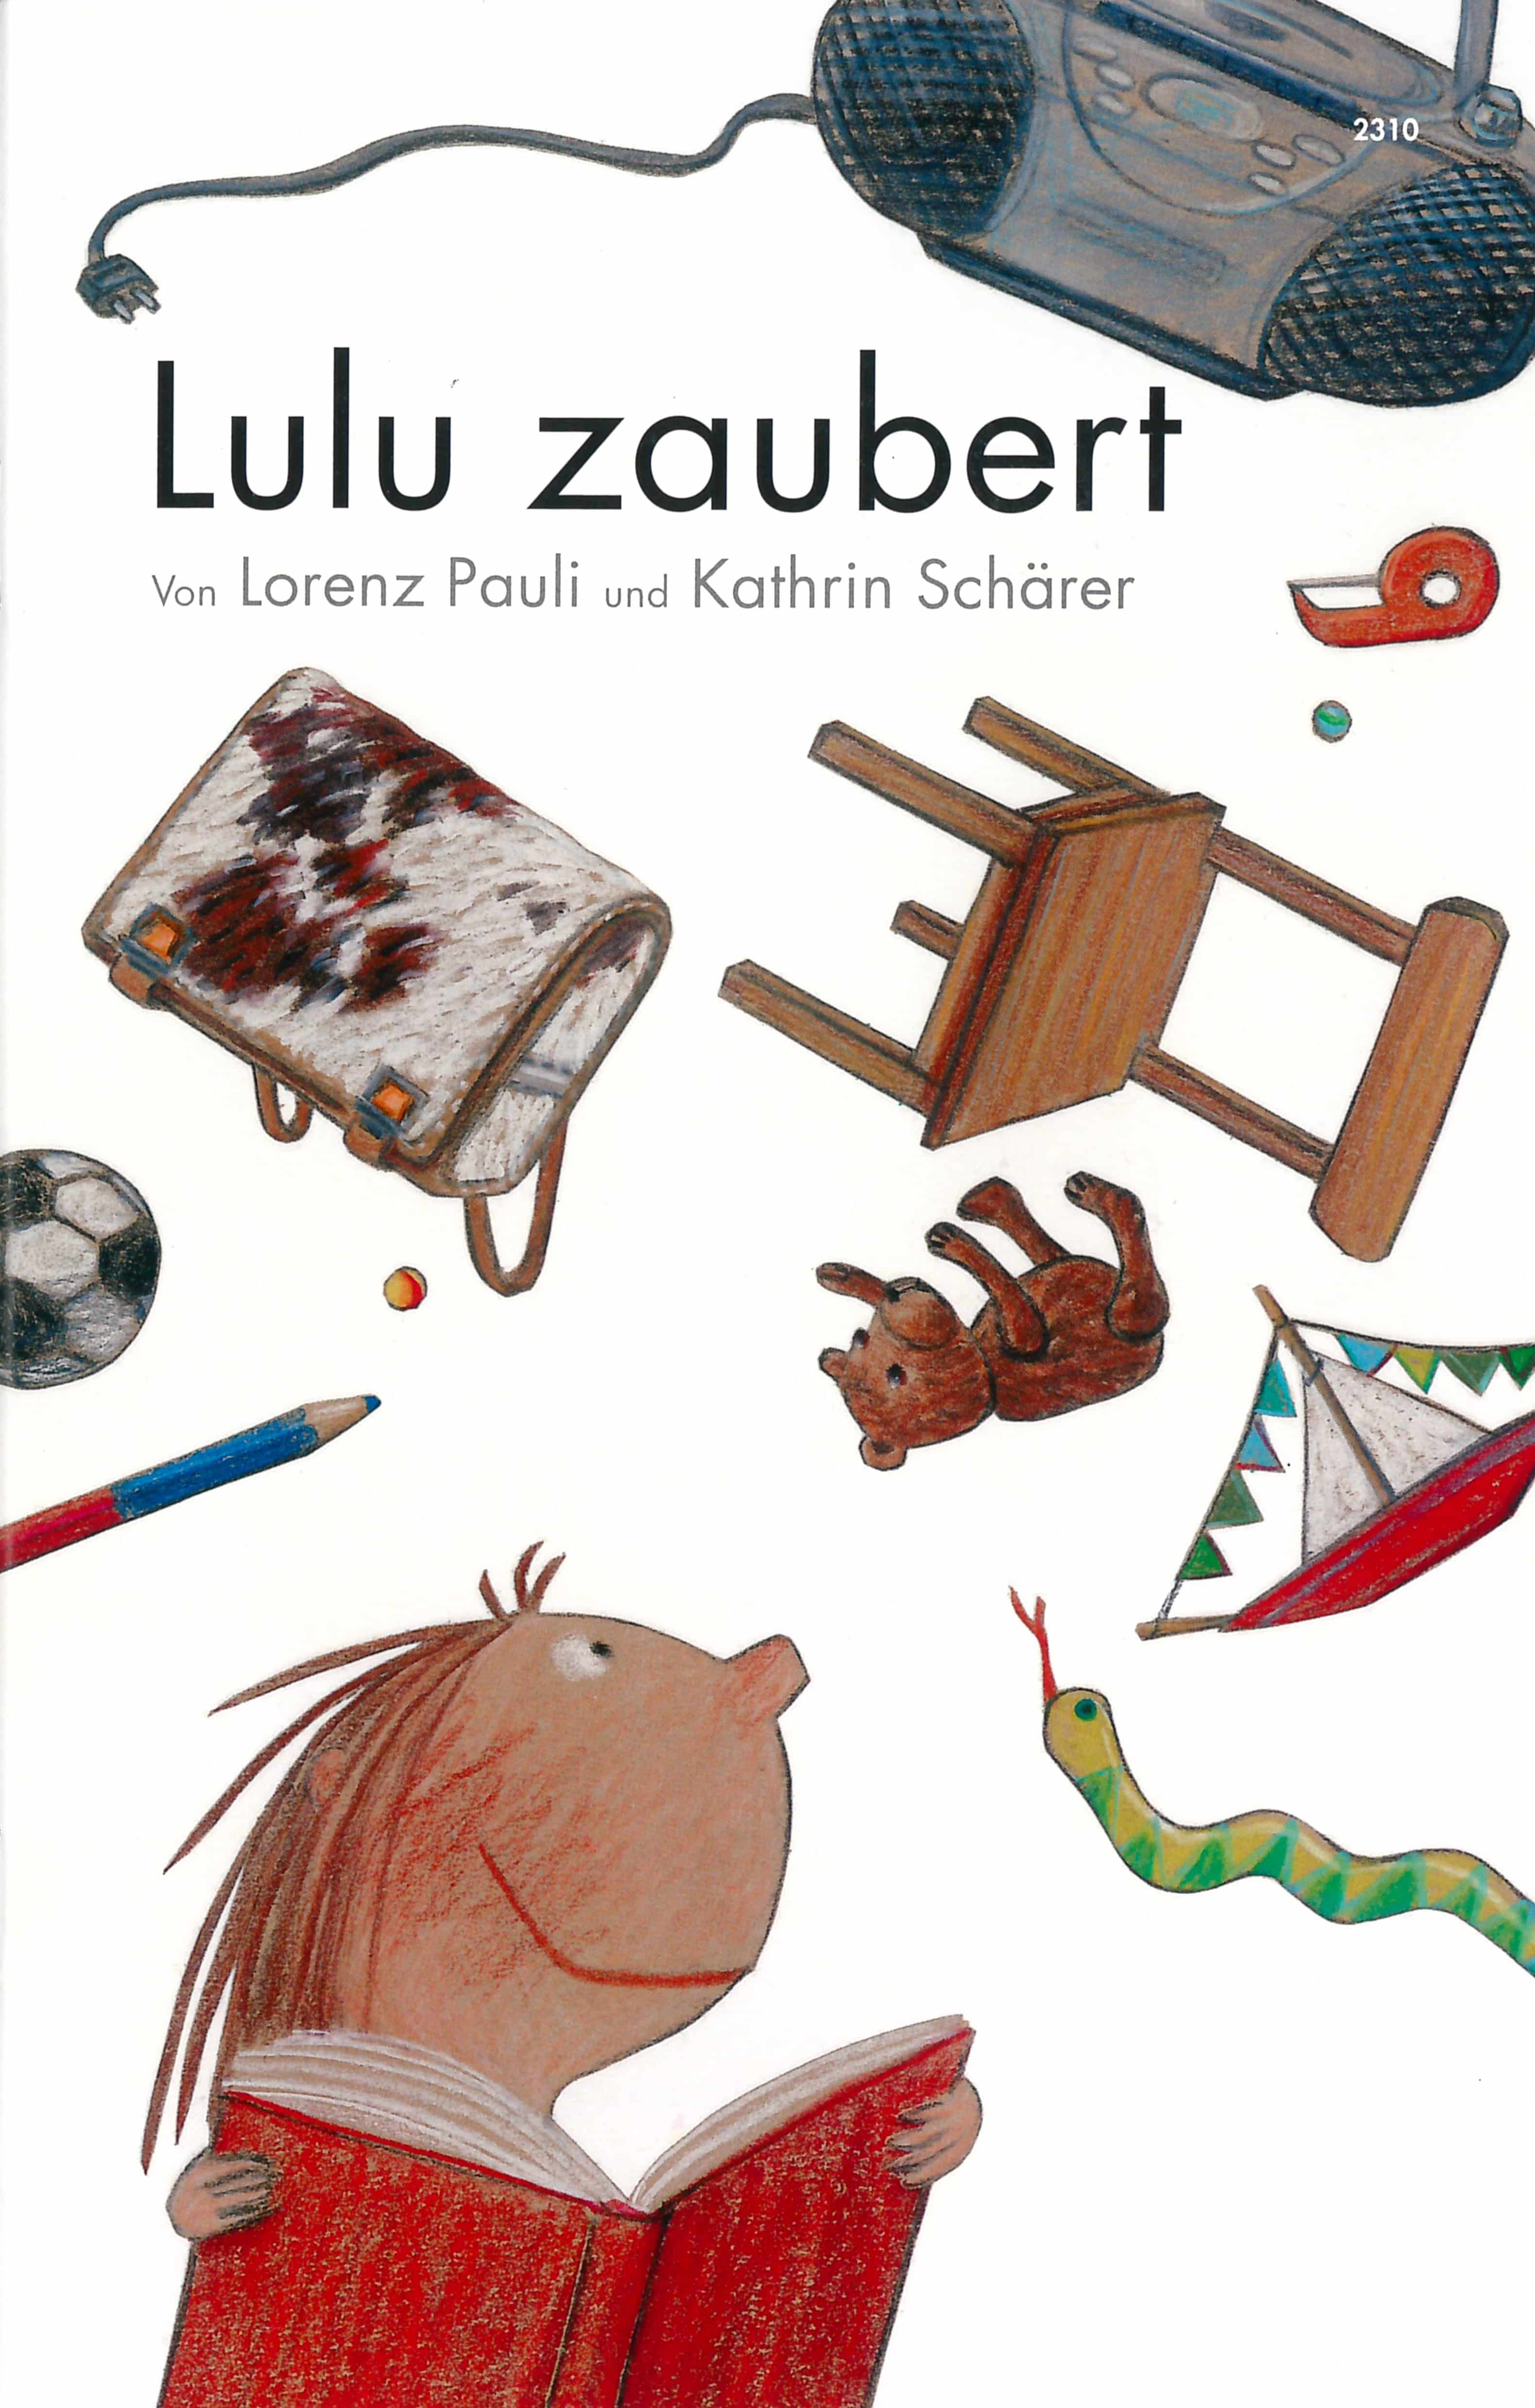 Lulu zaubert, ein Kinderbuch von Lorenz Pauli, Illustration von Kathrin Schaerer, SJW Verlag, Kinderbuchklassiker